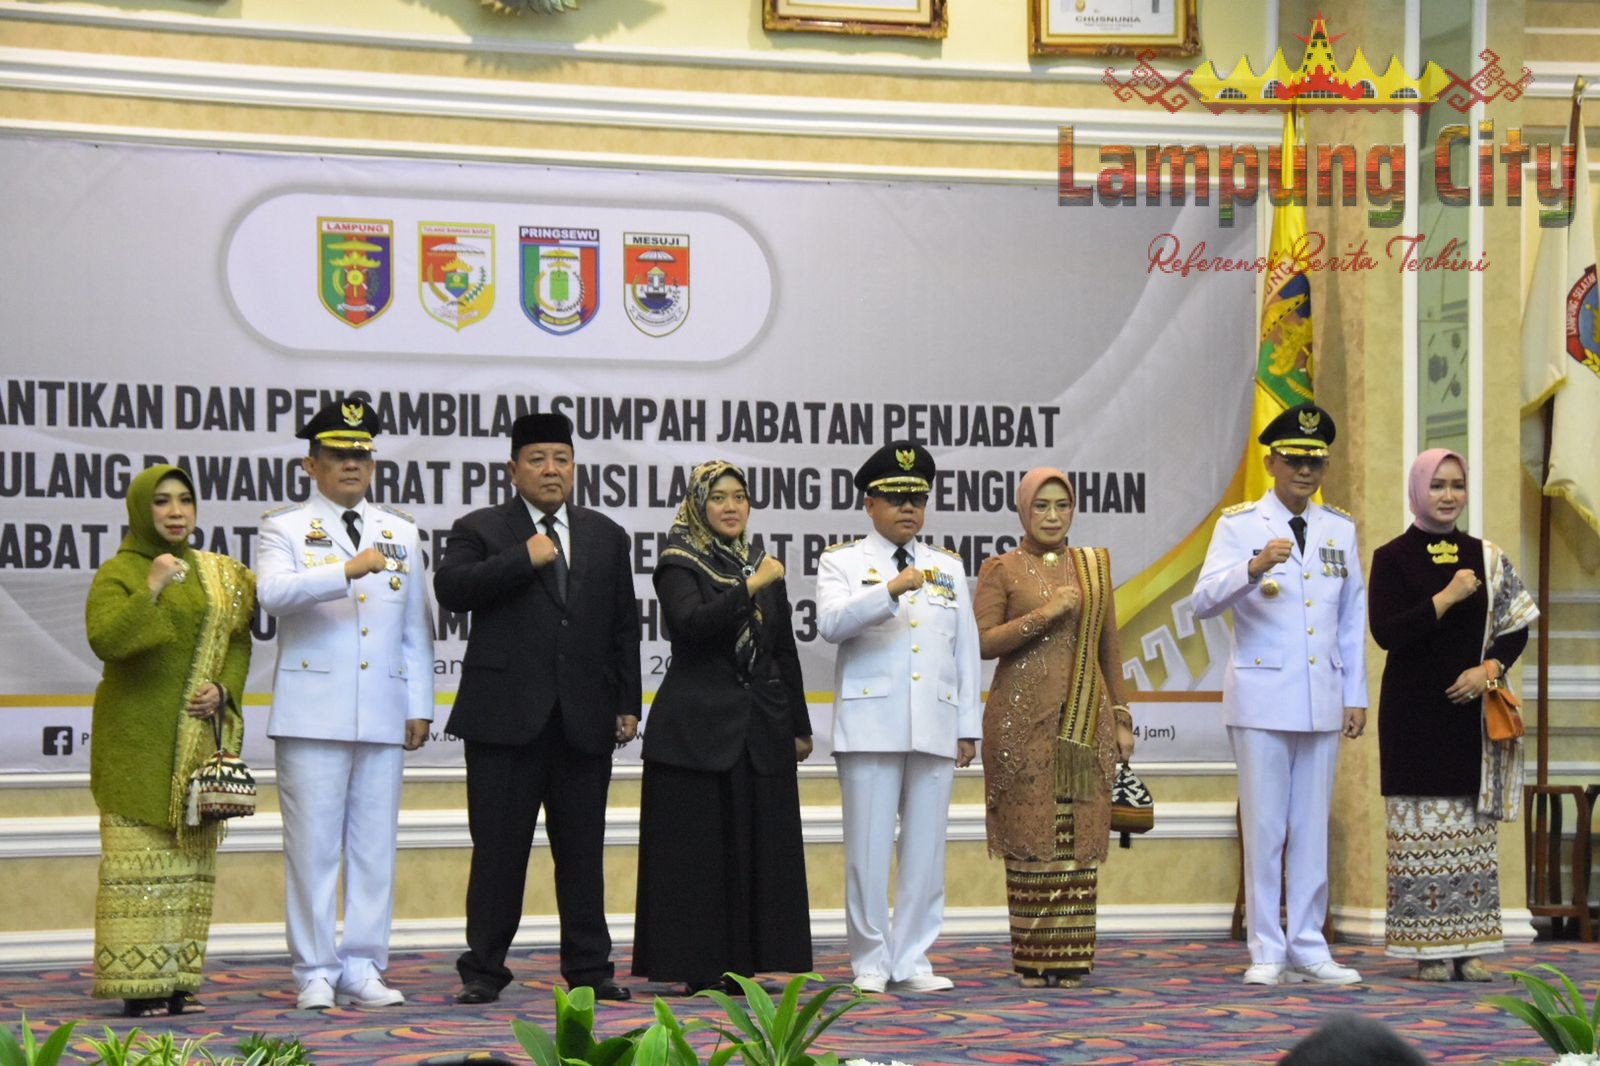 Gubernur Lampung Lantik M. Firsada Sebagai Penjabat Bupati Tulang Bawang Barat